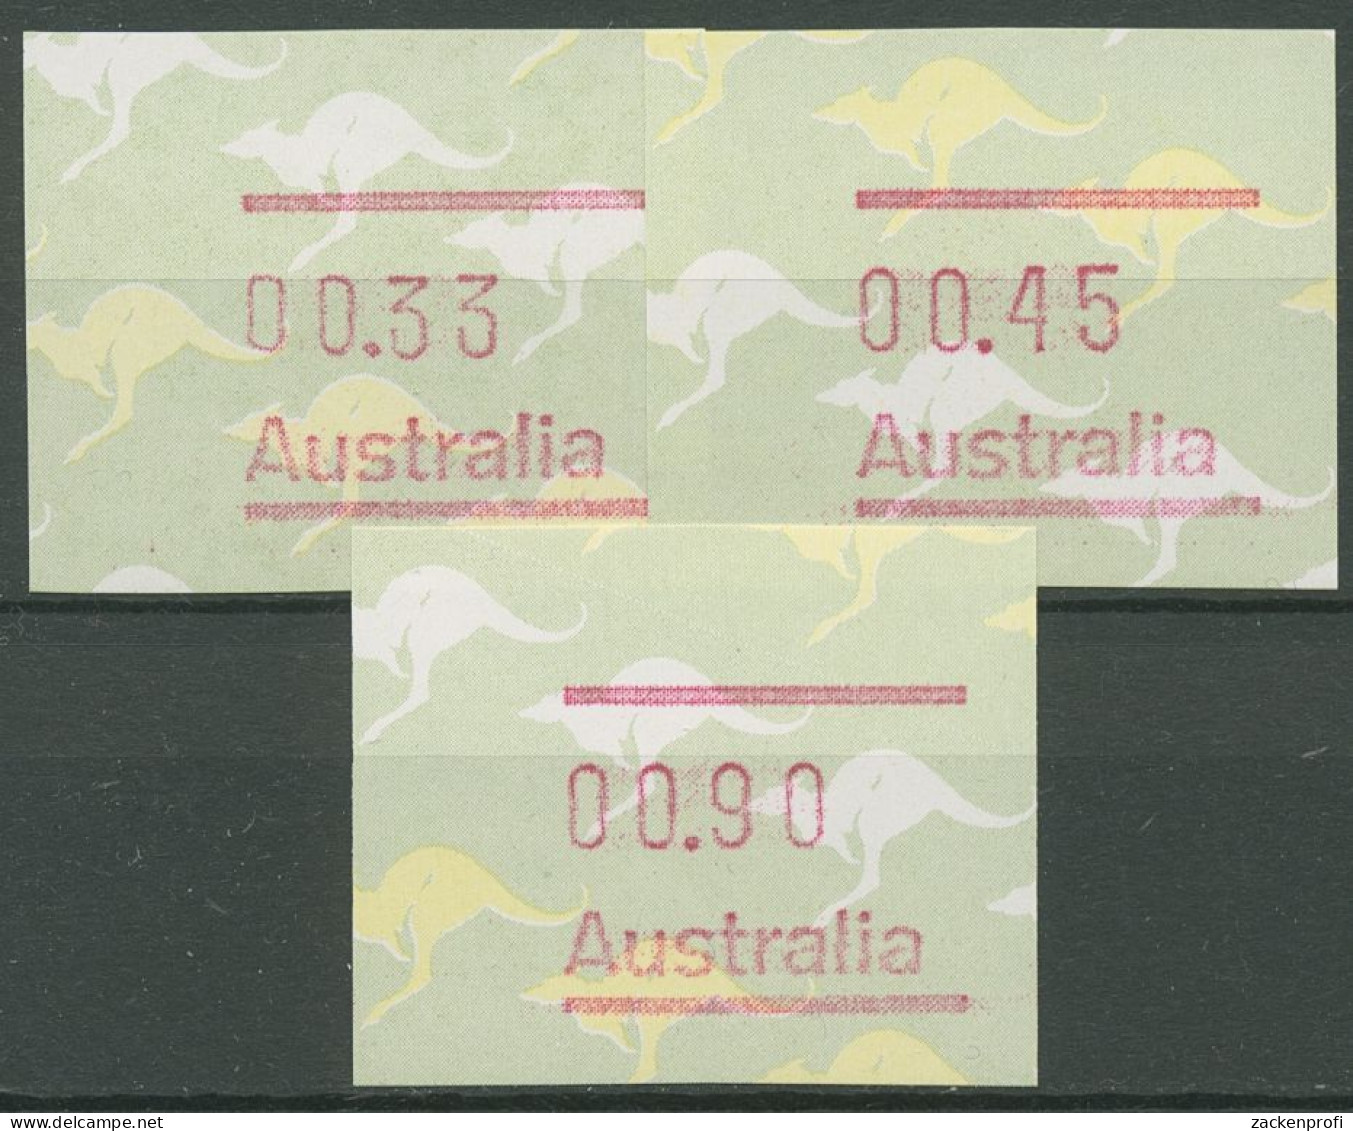 Australien 1985 Känguruh Tastensatz Automatenmarke 3 S1 Postfrisch - Automatenmarken [ATM]